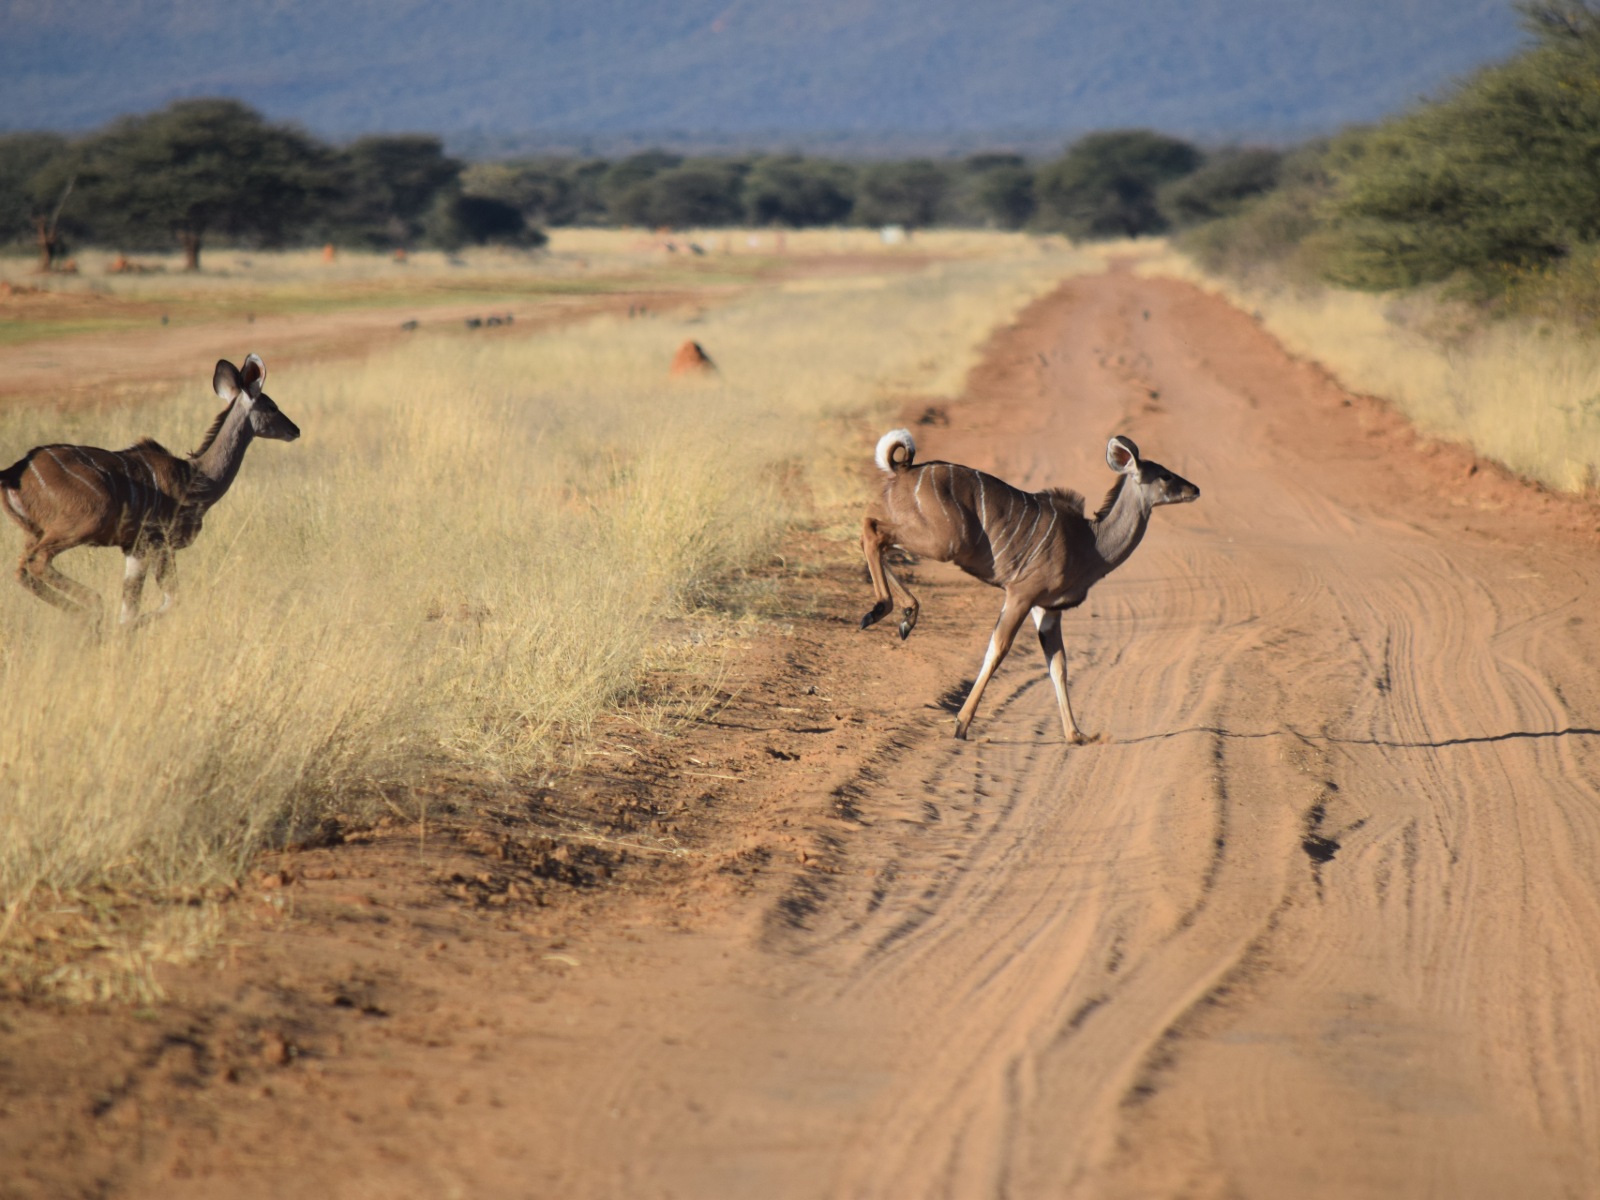 Deer running across a dirt road.